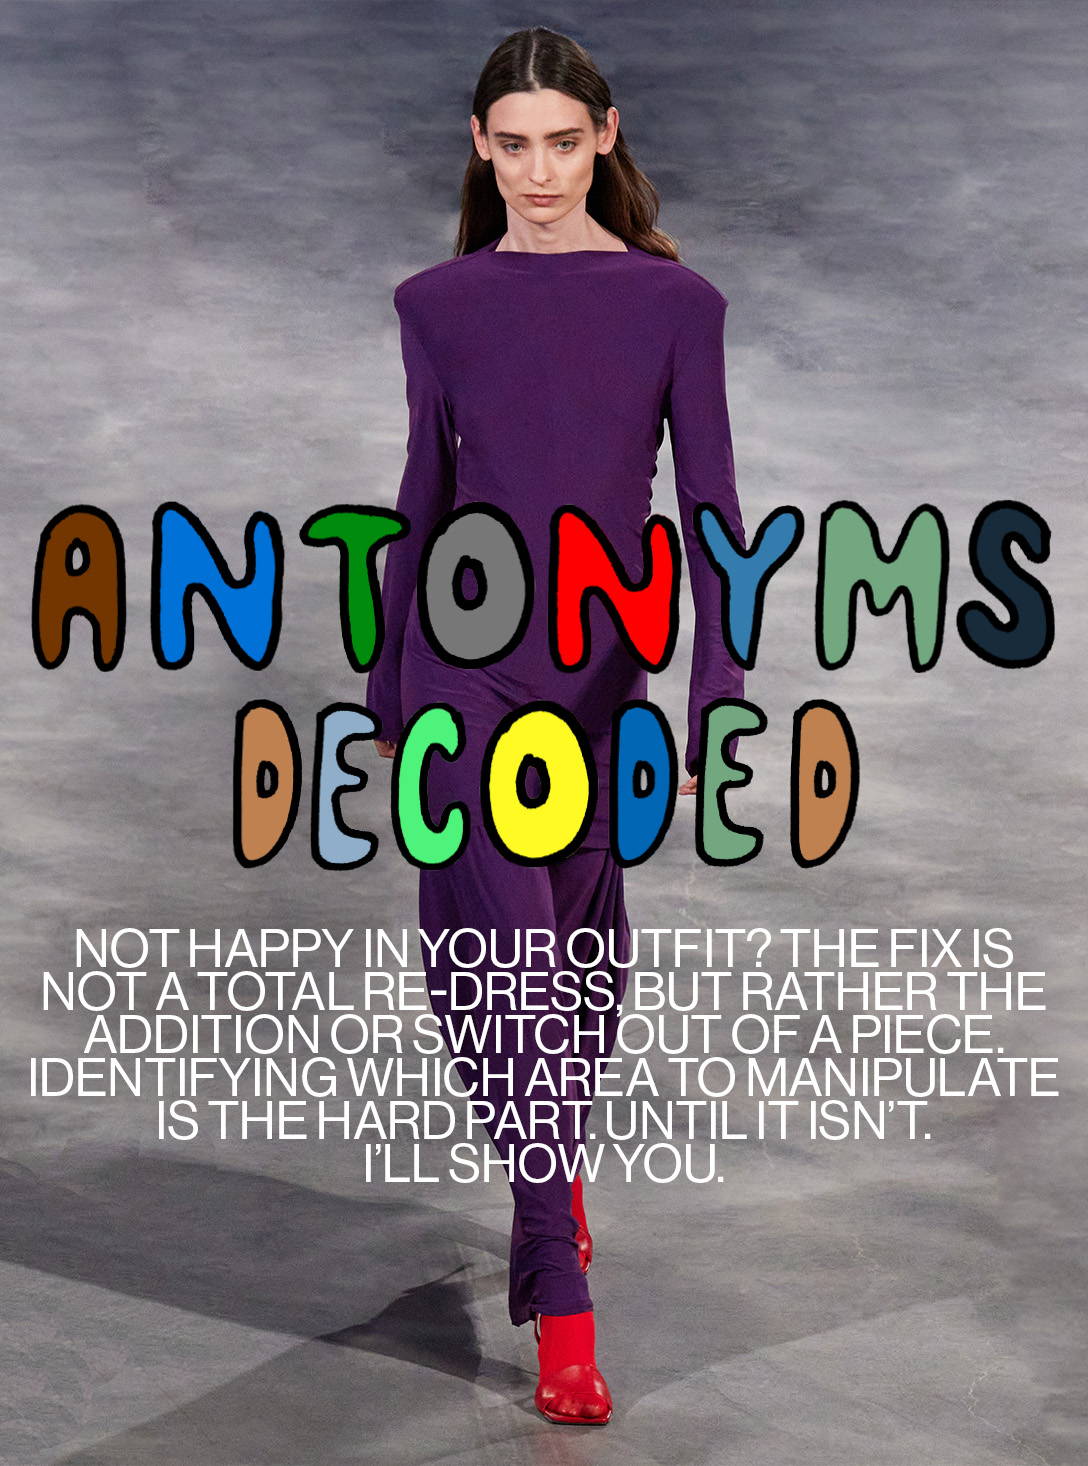 Antonyms Decoded